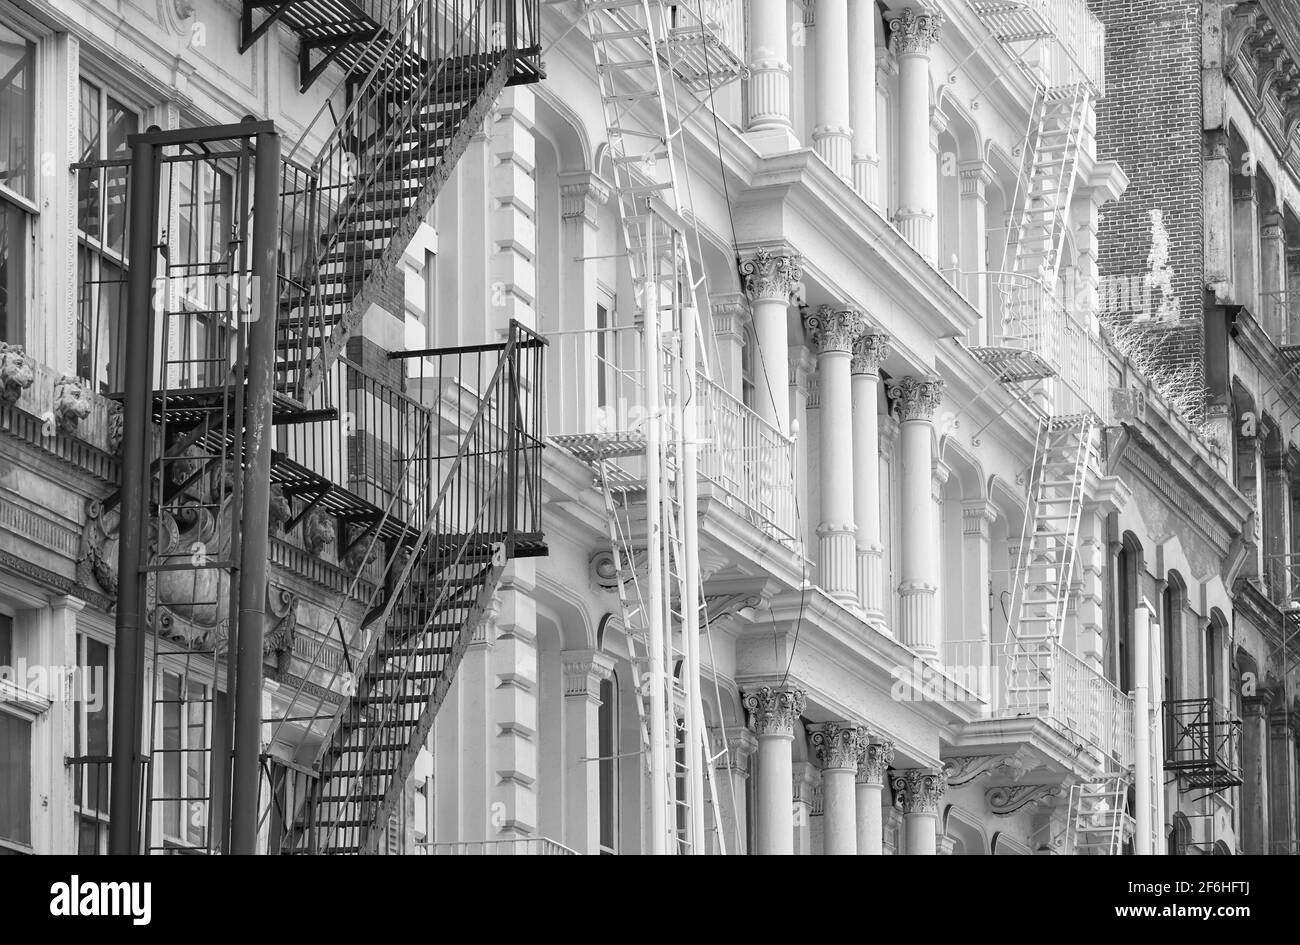 Rangée de vieux bâtiments avec des évasions de feu de fer, photo noir et blanc de New York Cityscape, USA. Banque D'Images